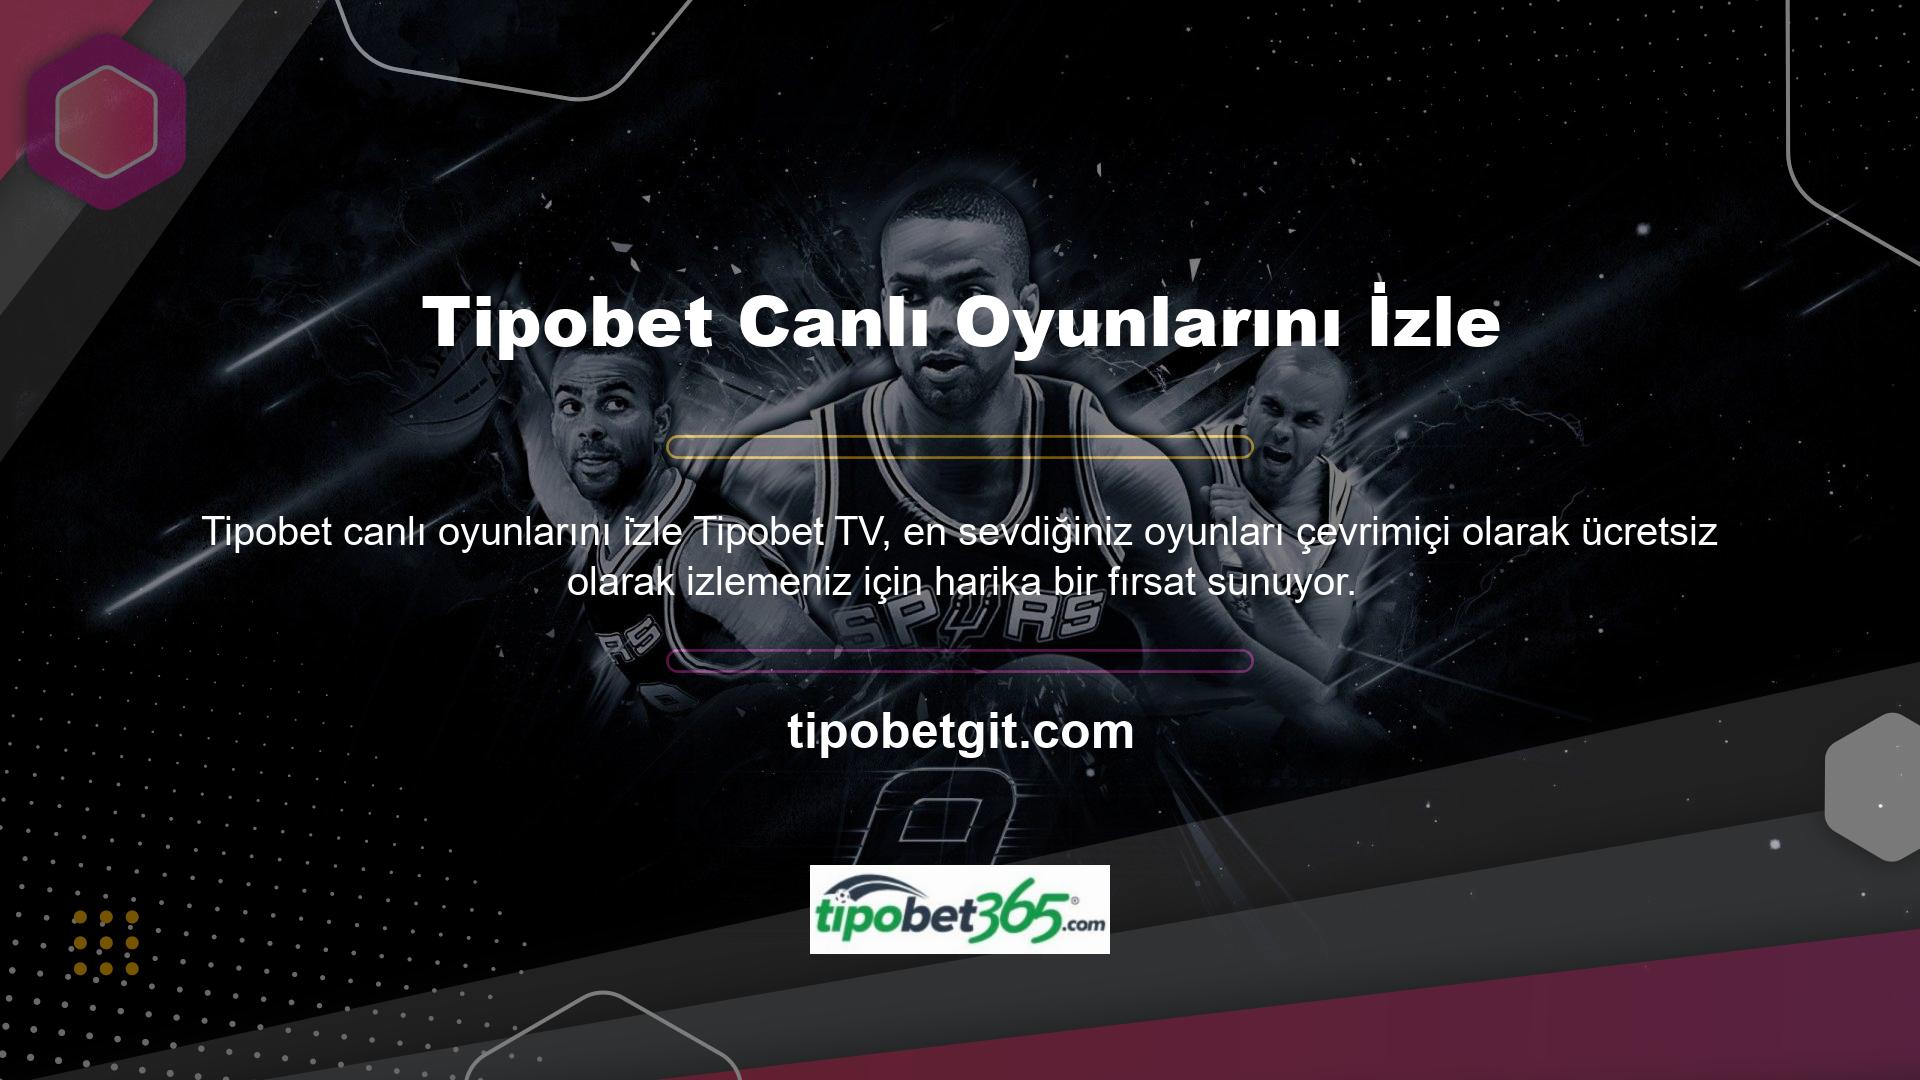 Tipobet Canlı Maç sayfası da birçok faydalı aktiviteye sahiptir